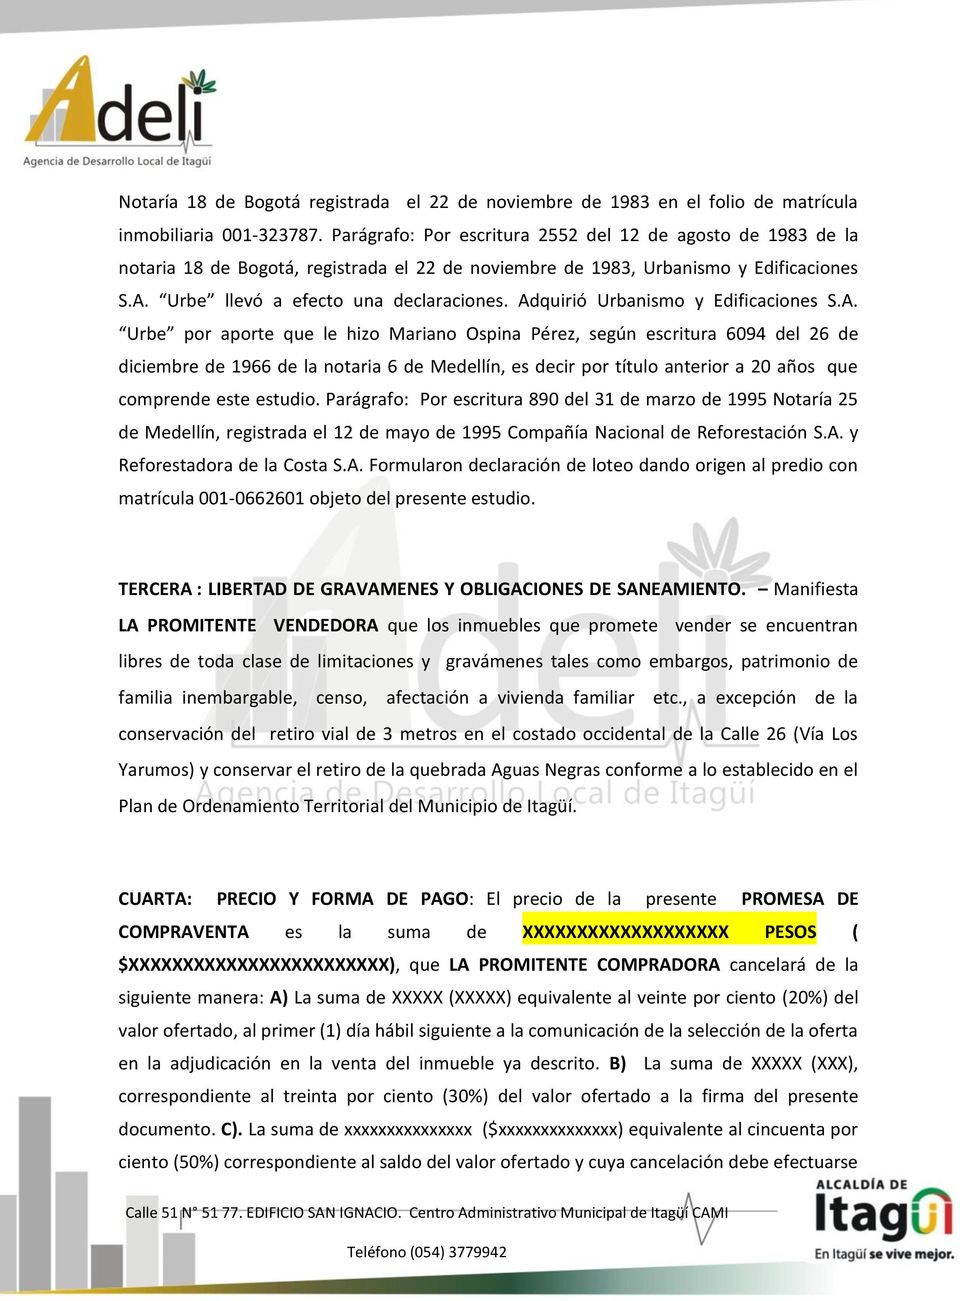 Adquirió Urbanismo y Edificaciones S.A. Urbe por aporte que le hizo Mariano Ospina Pérez, según escritura 6094 del 26 de diciembre de 1966 de la notaria 6 de Medellín, es decir por título anterior a 20 años que comprende este estudio.